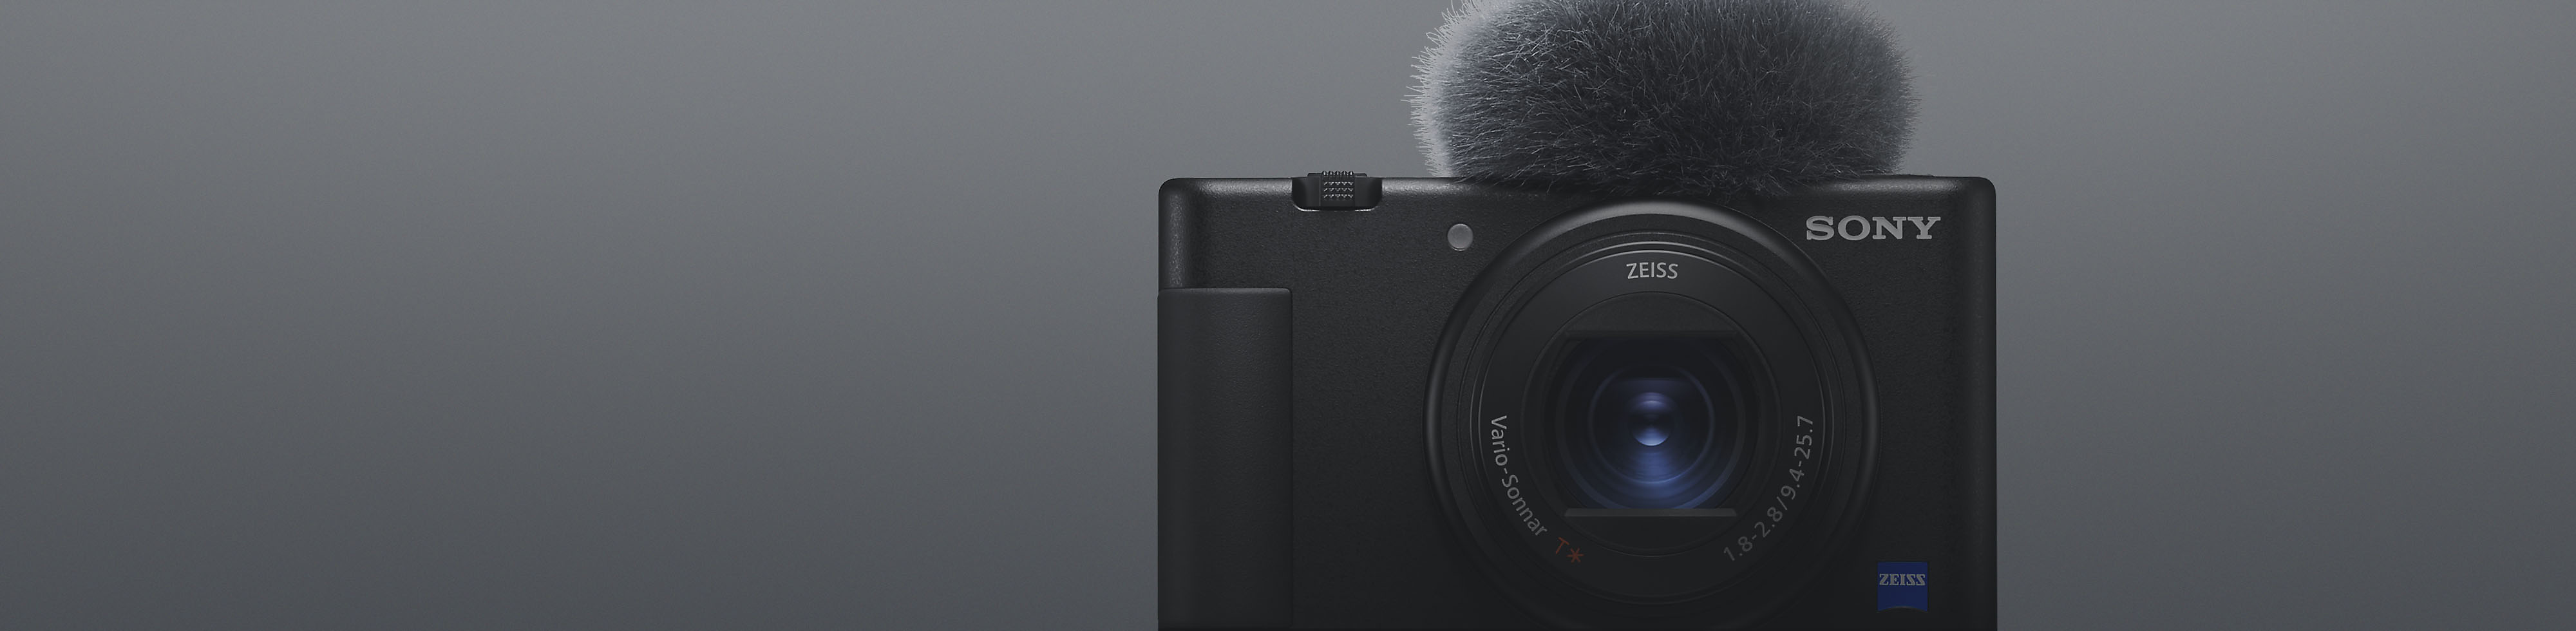 Pohled zepředu na černý kompaktní fotoaparát Sony s připevněným mikrofonem